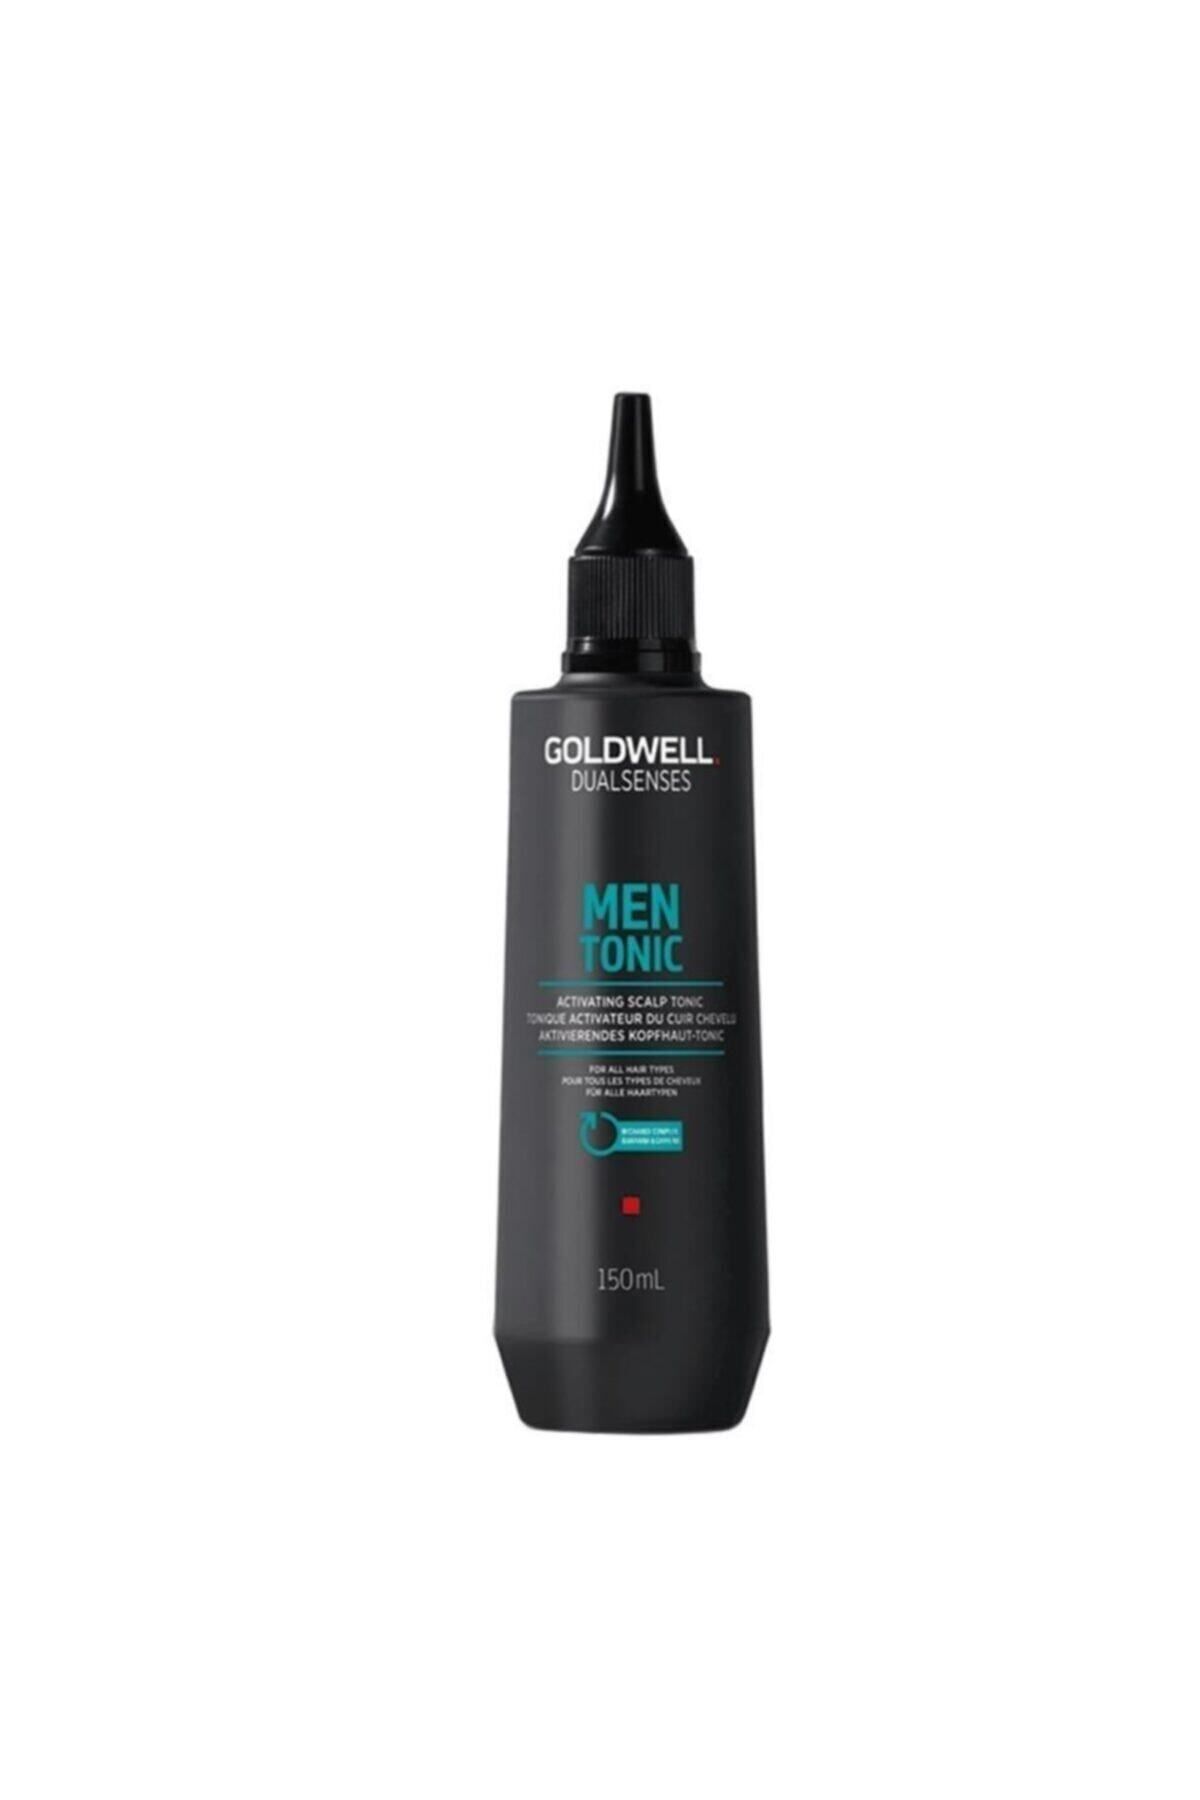 GOLDWELL Dualsenses Men Tonic Erkeklere Özel Dökülen Saçlar İçin Durulanmayan Güçlendirici Saç Toniği (150ml)